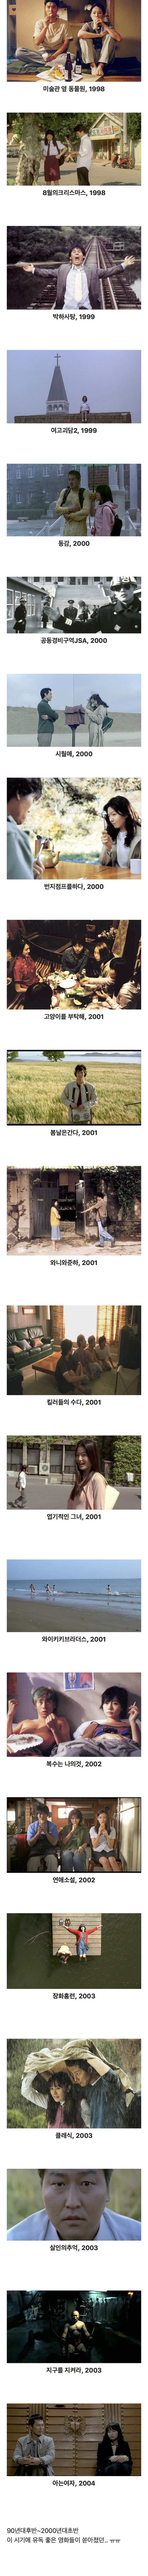 nokbeon.net-2000년대 초반 한국 영화 특유의 분위기-1번 이미지